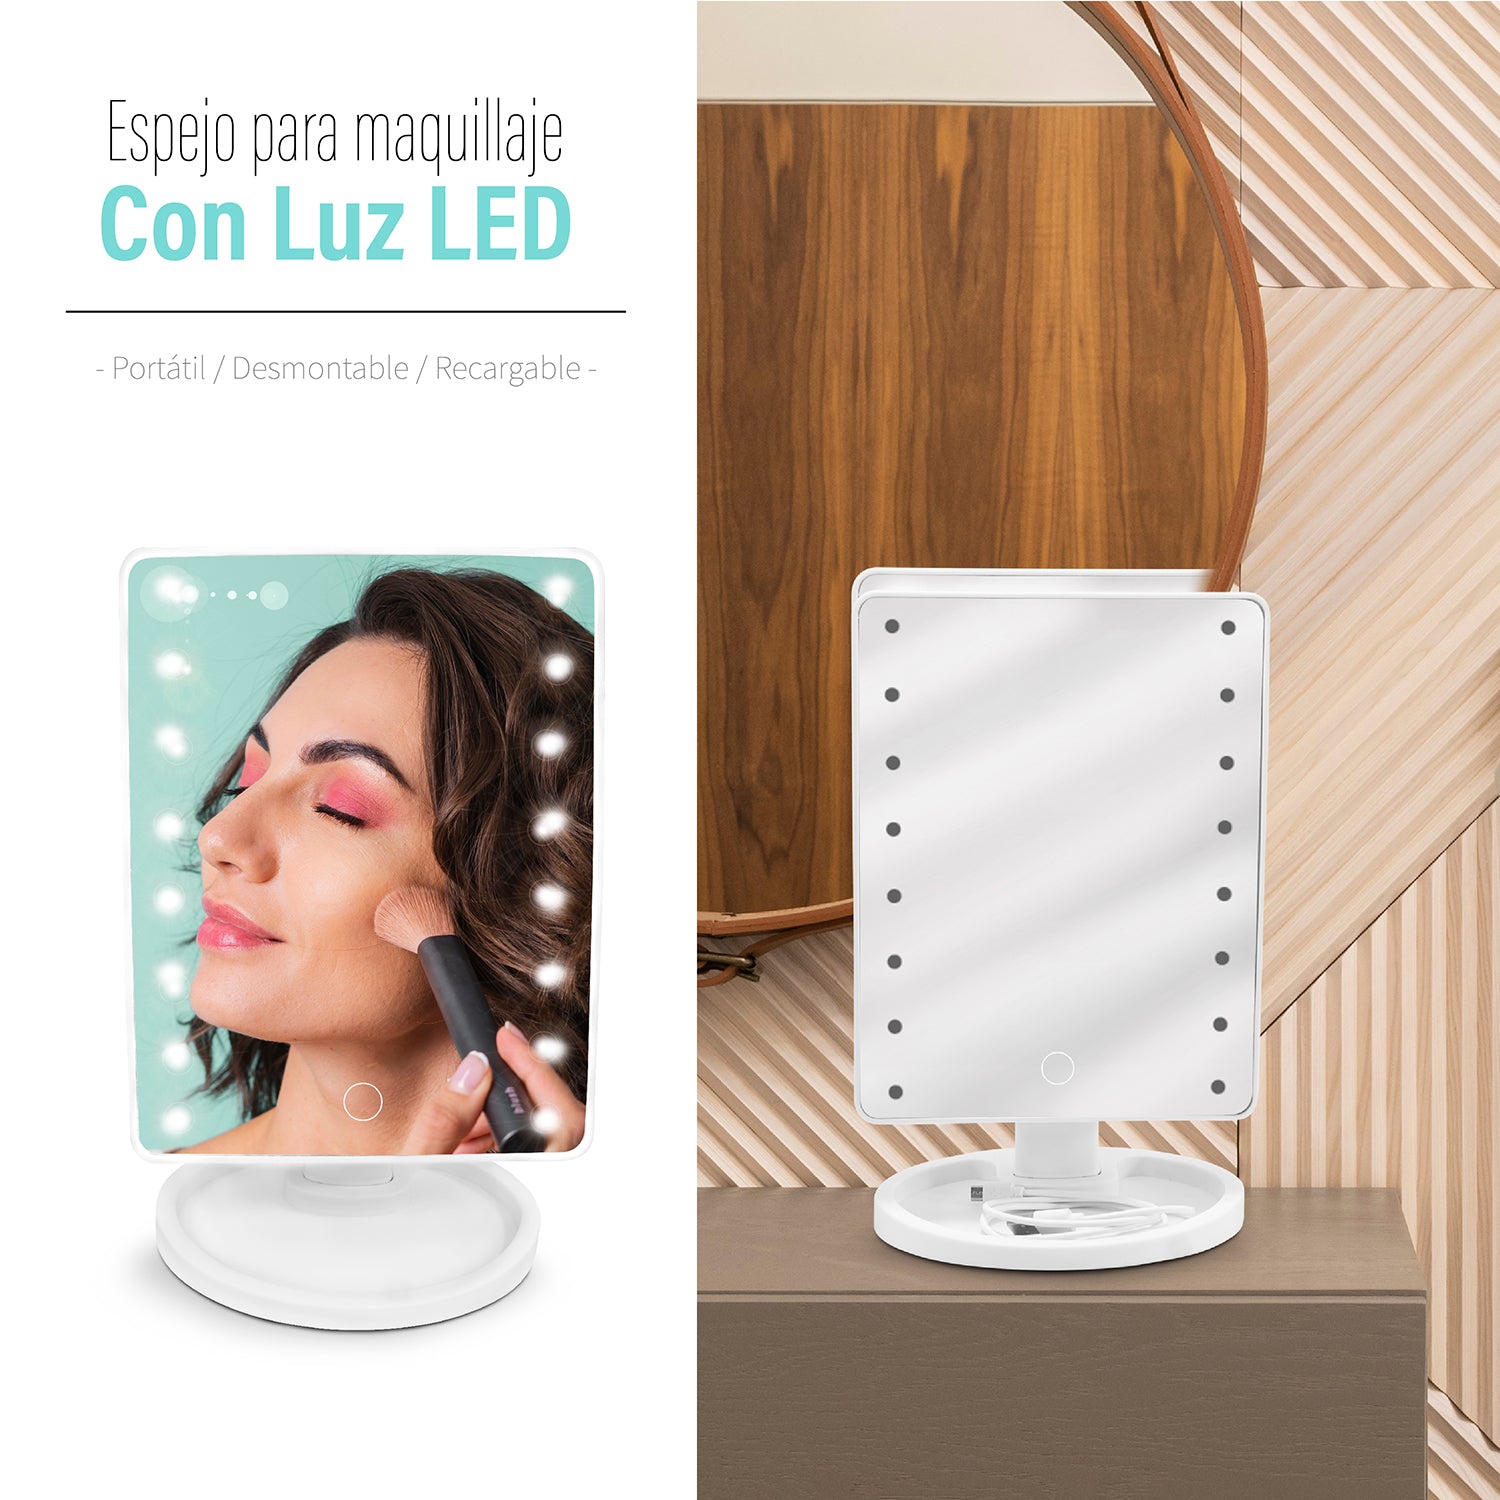 Tienda Piola - 💖💄ESPEJO LED PARA MAQUILLAJE💄💖 Quien no ama este espejo  con luces led??😍😍 Con iluminación brillante para que puedas visualizar  los detalles😋 👉 Funciona a pilas 👉 Rotacion 360° 👉